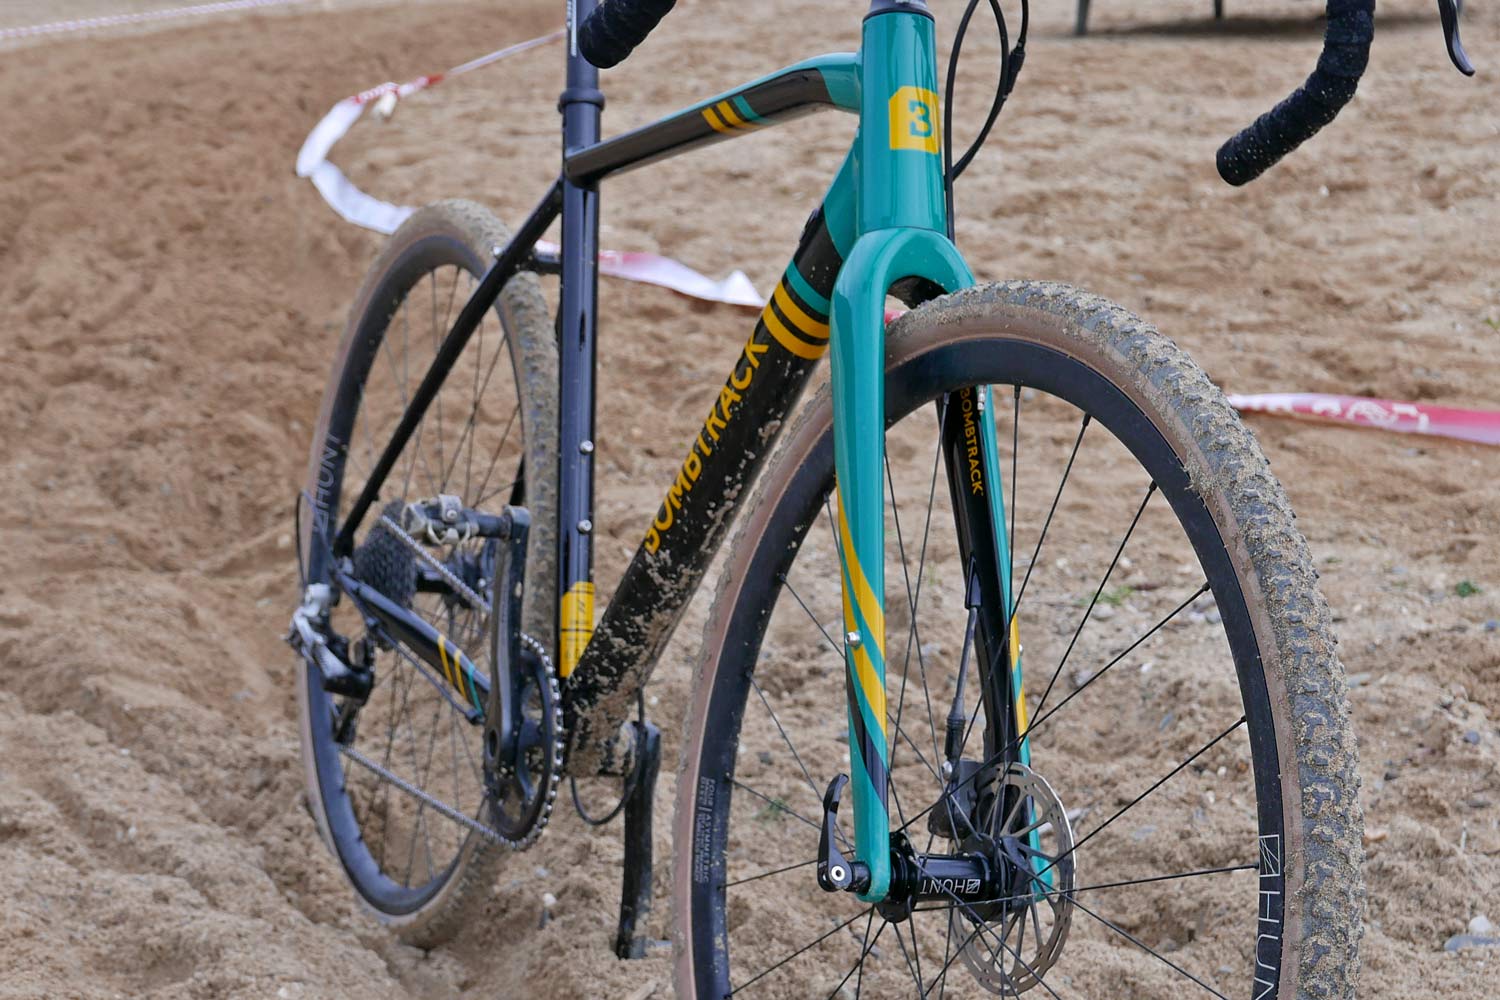 2019 Bombtrack Tension 2 race-ready alloy cross bike